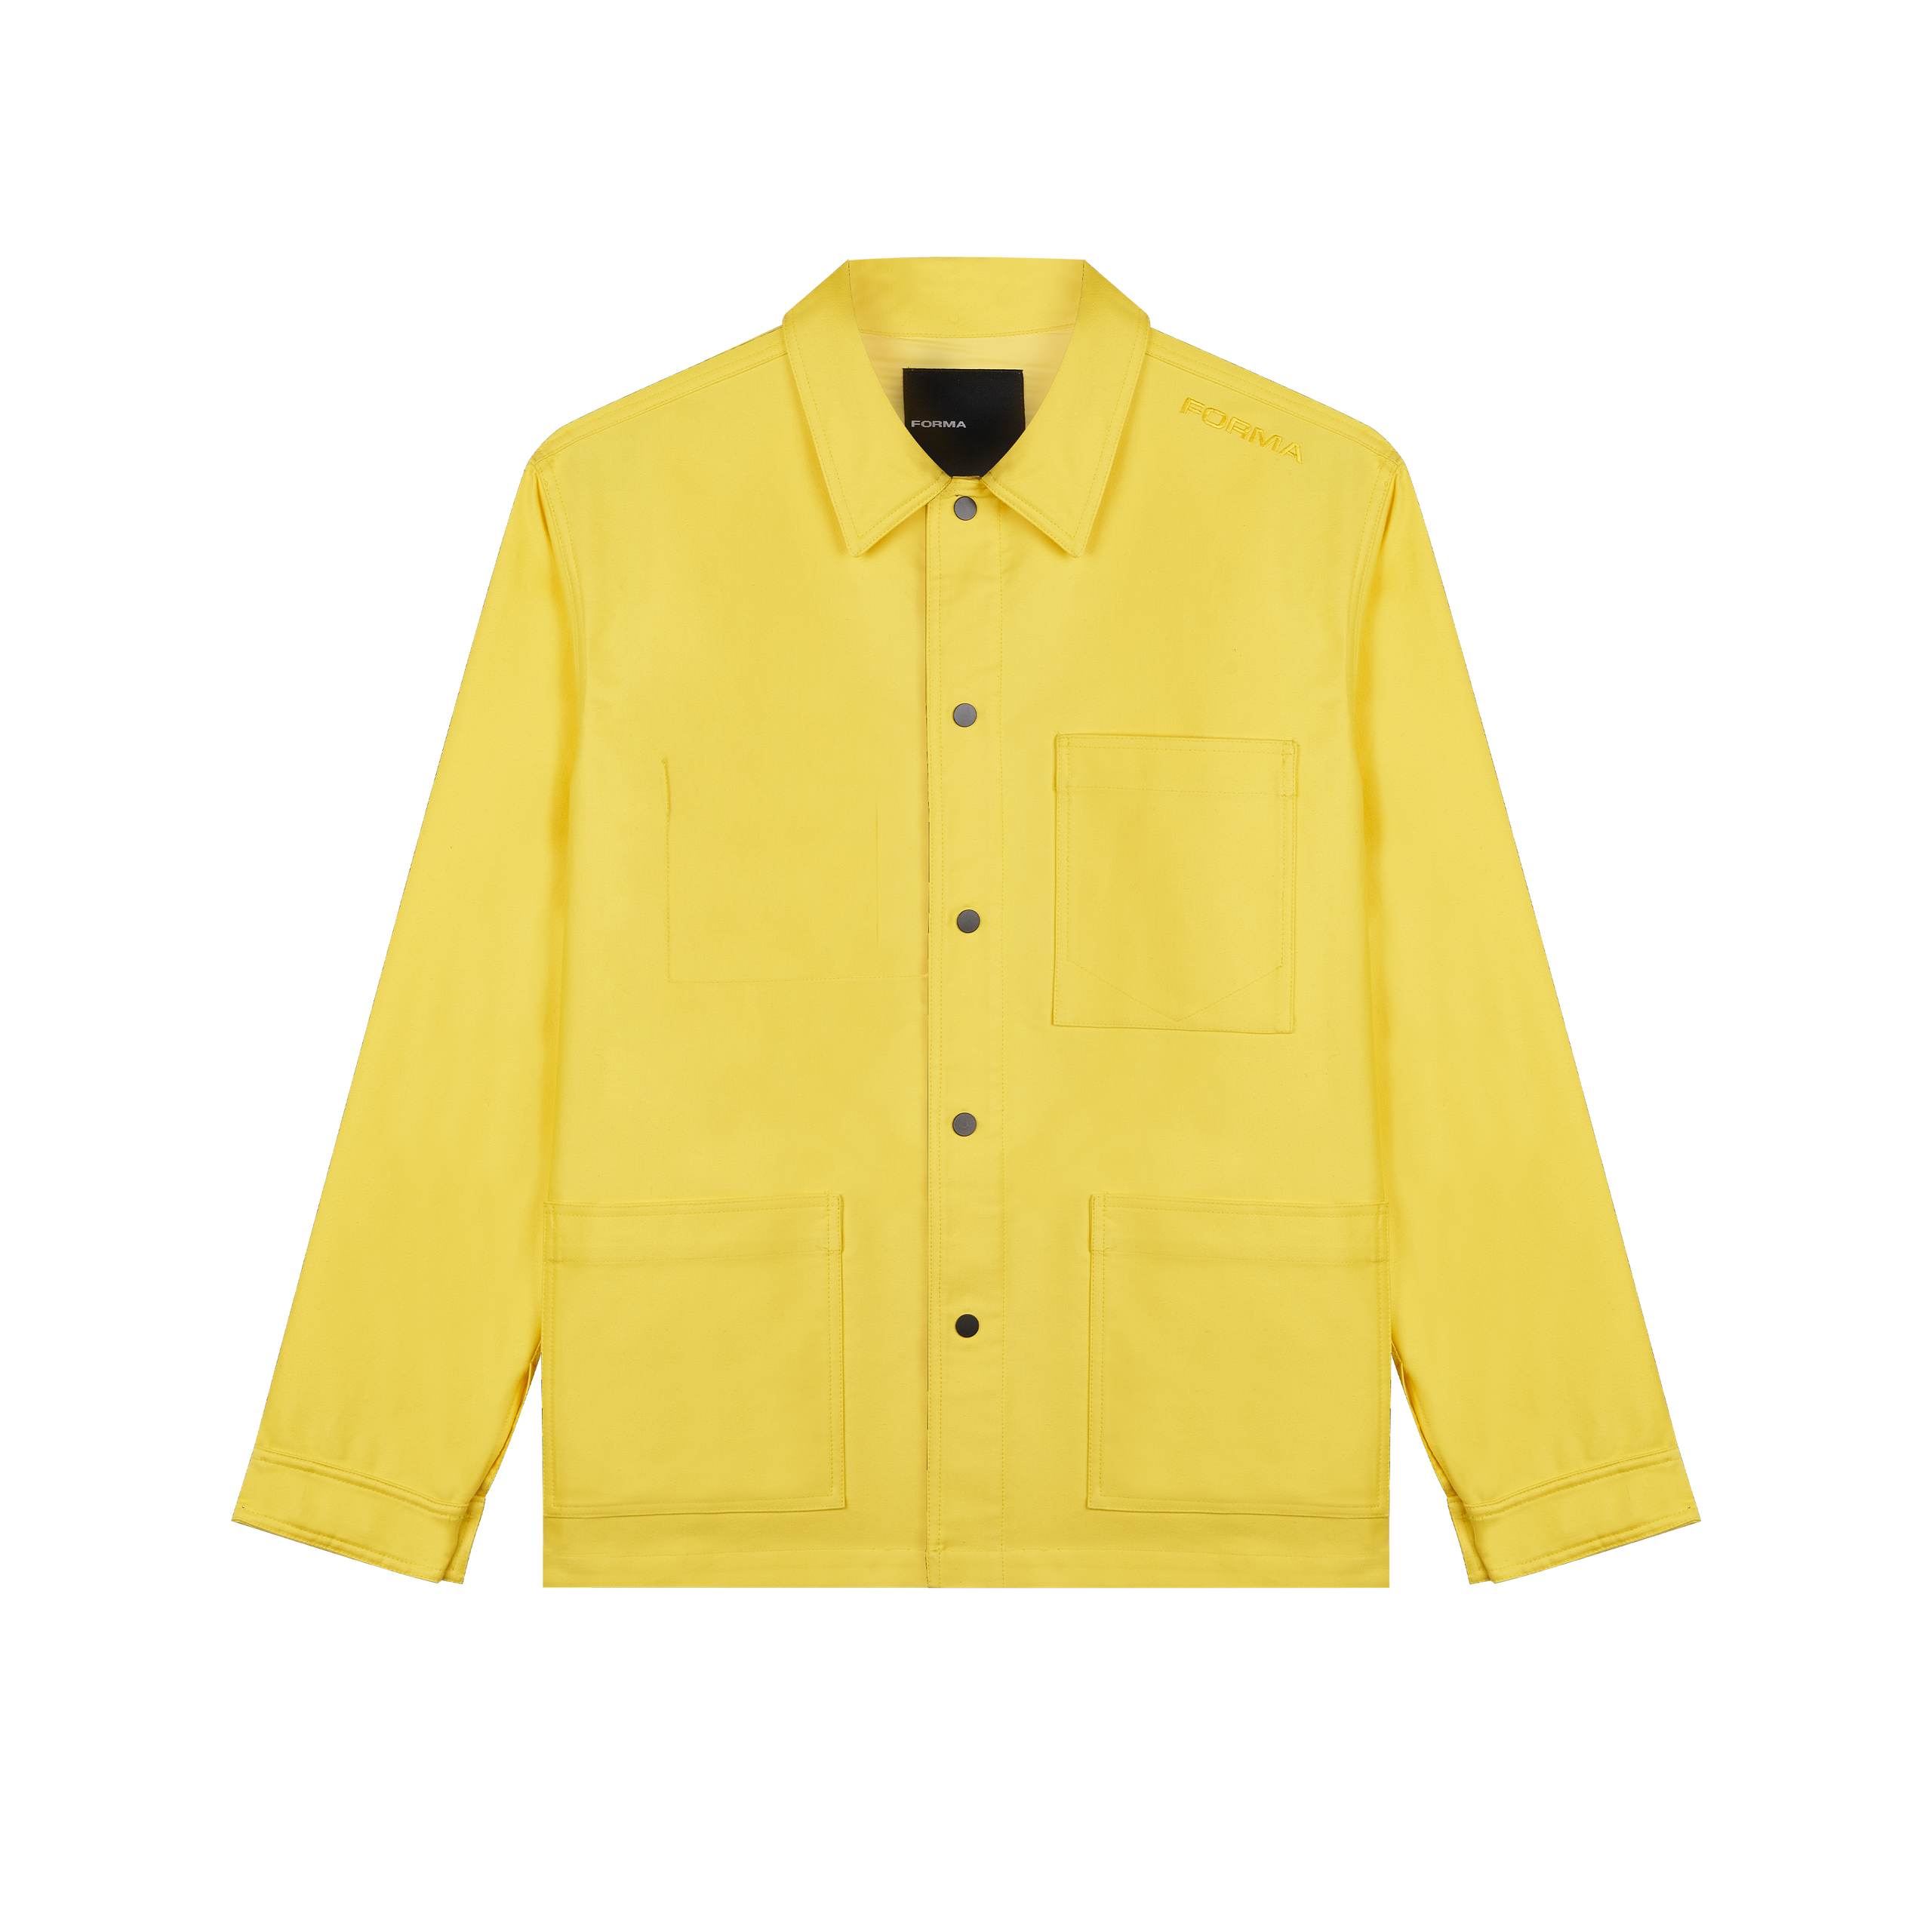 Forma yellow work jacket